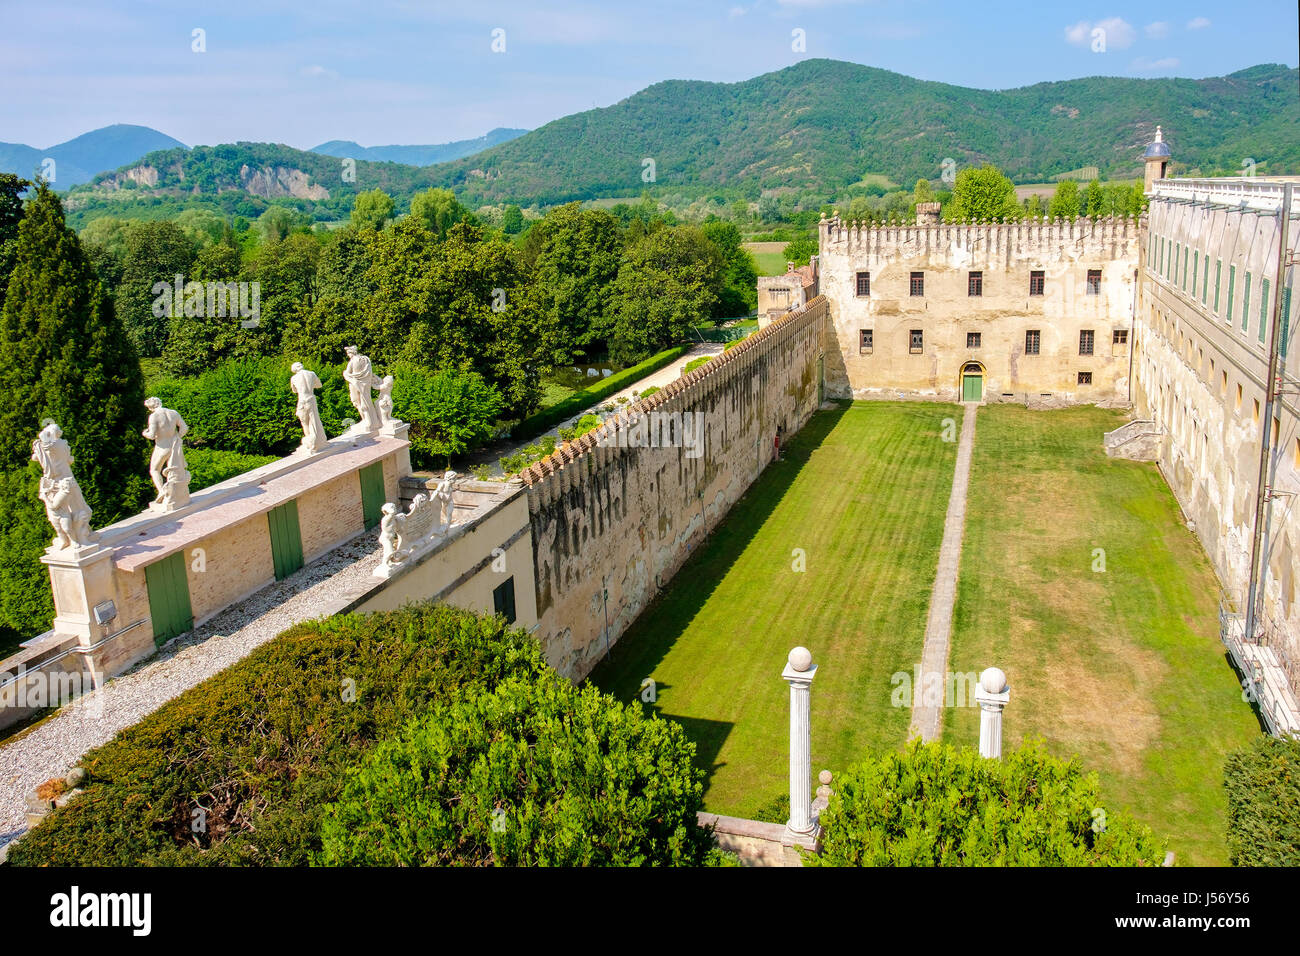 Padova, Italie vue panoramique sur la cour intérieure de l'Catajo château dans la région des collines euganéennes Banque D'Images